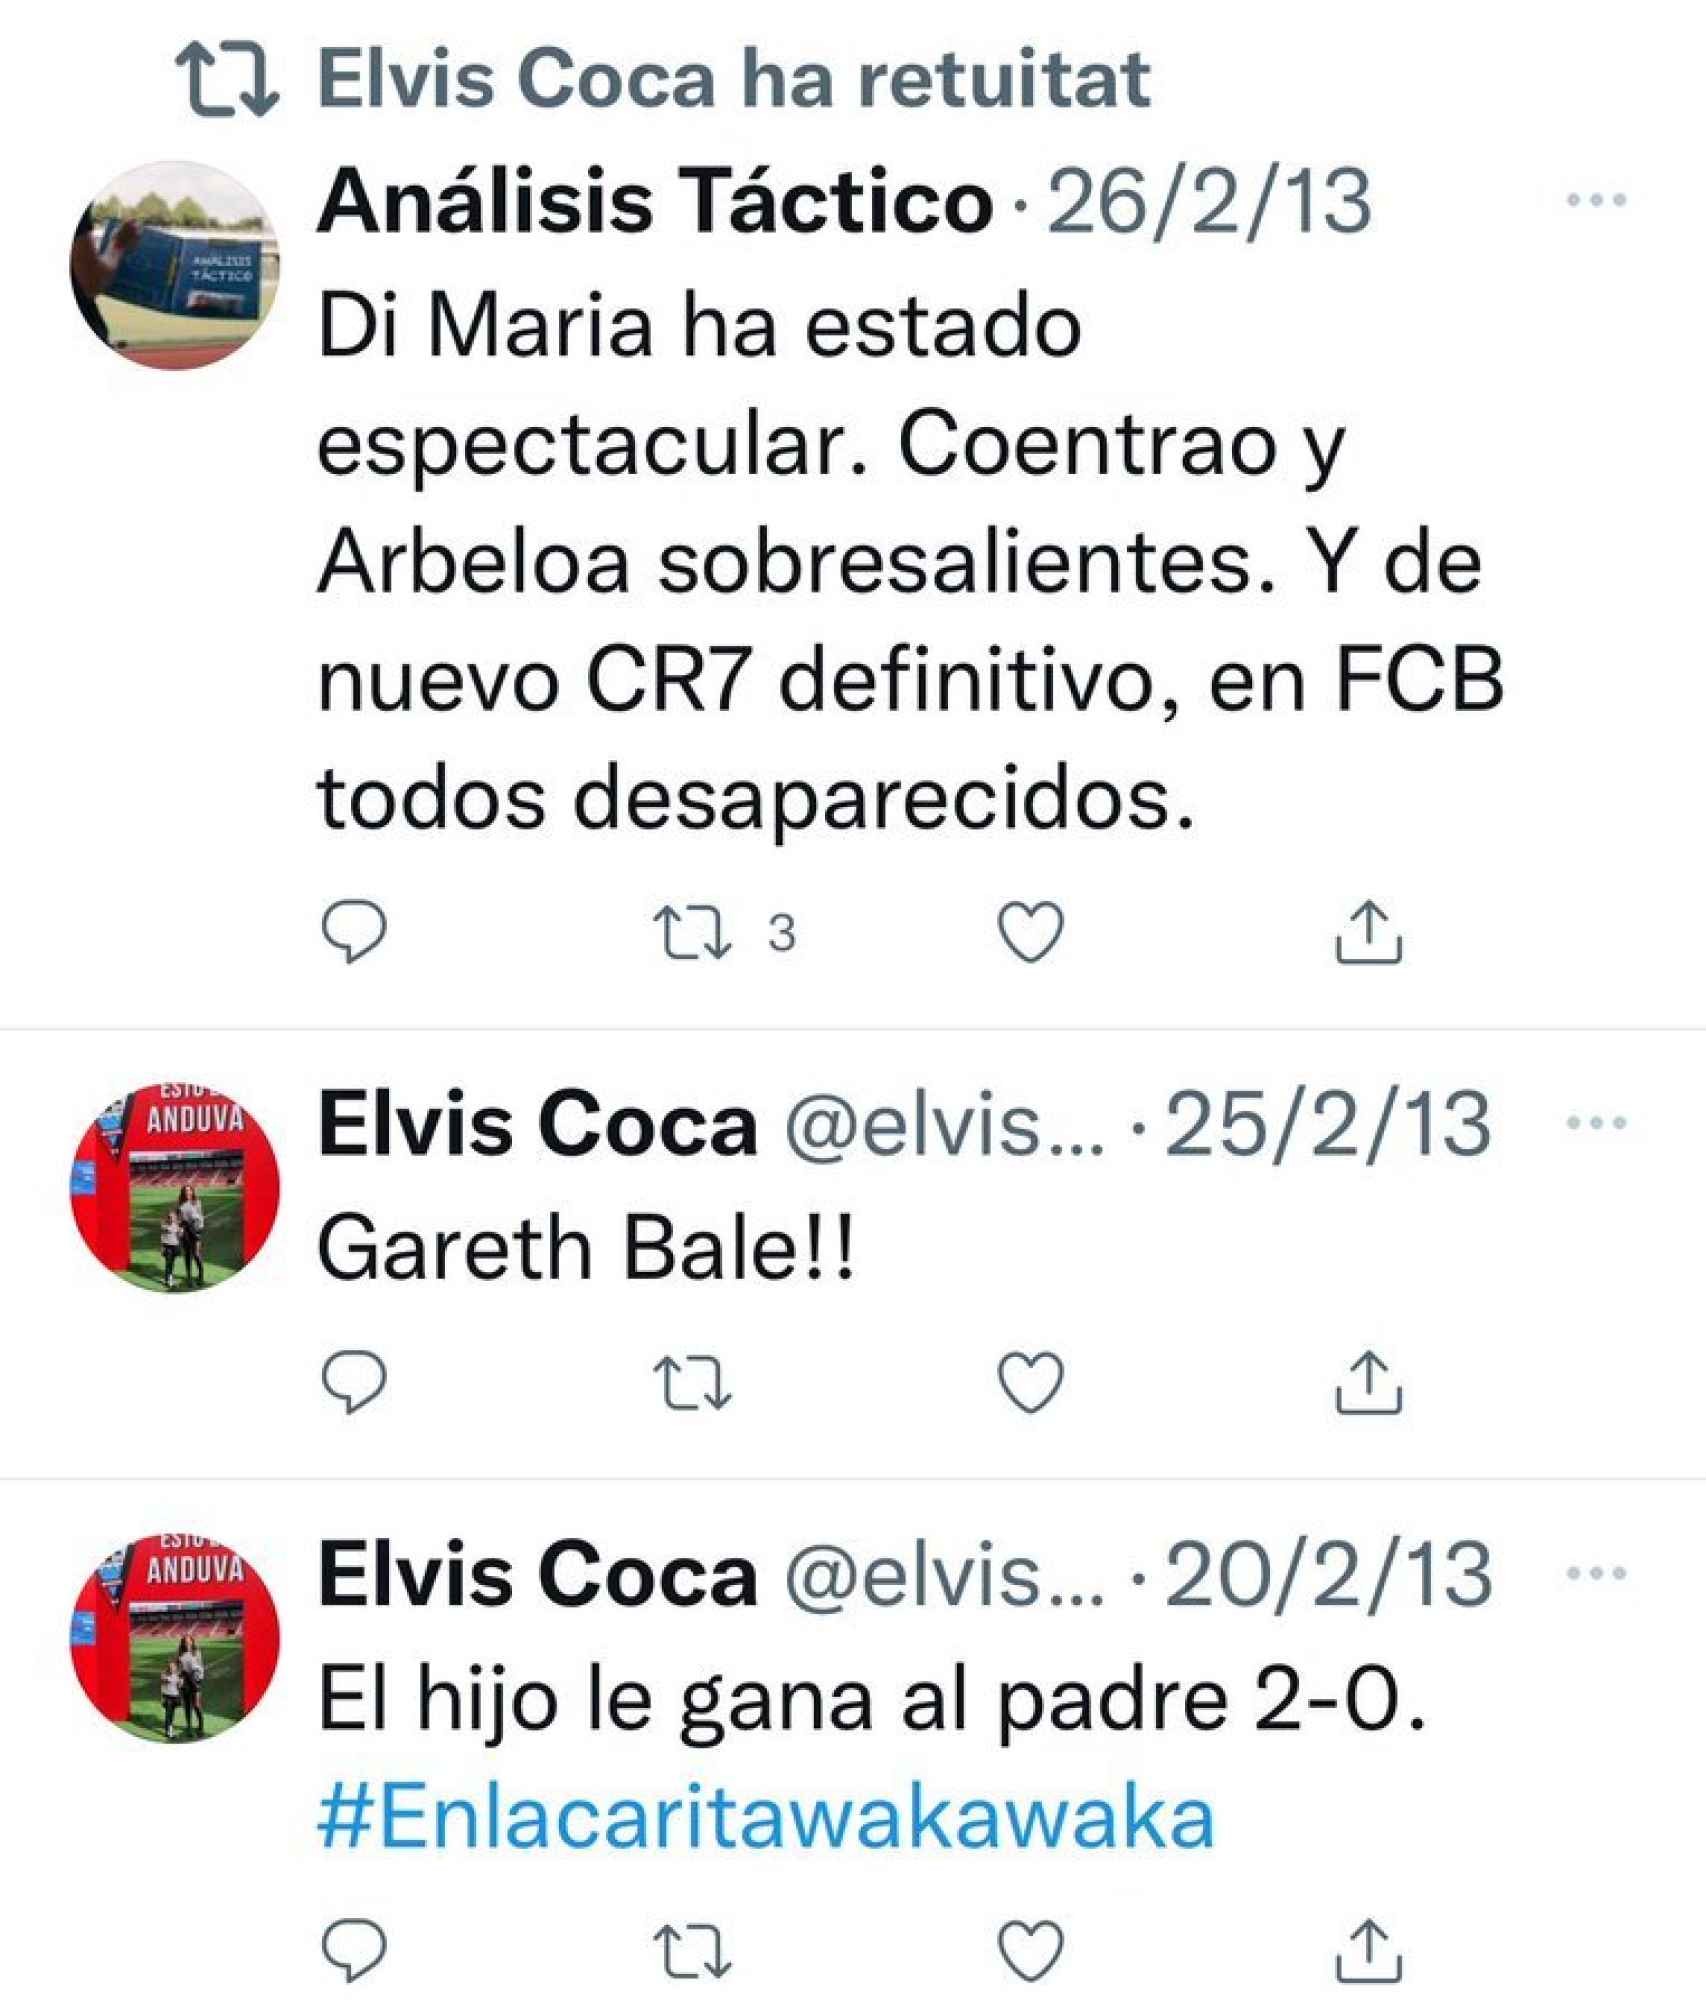 Algunos de los tuits madridistas de Elvis Coca